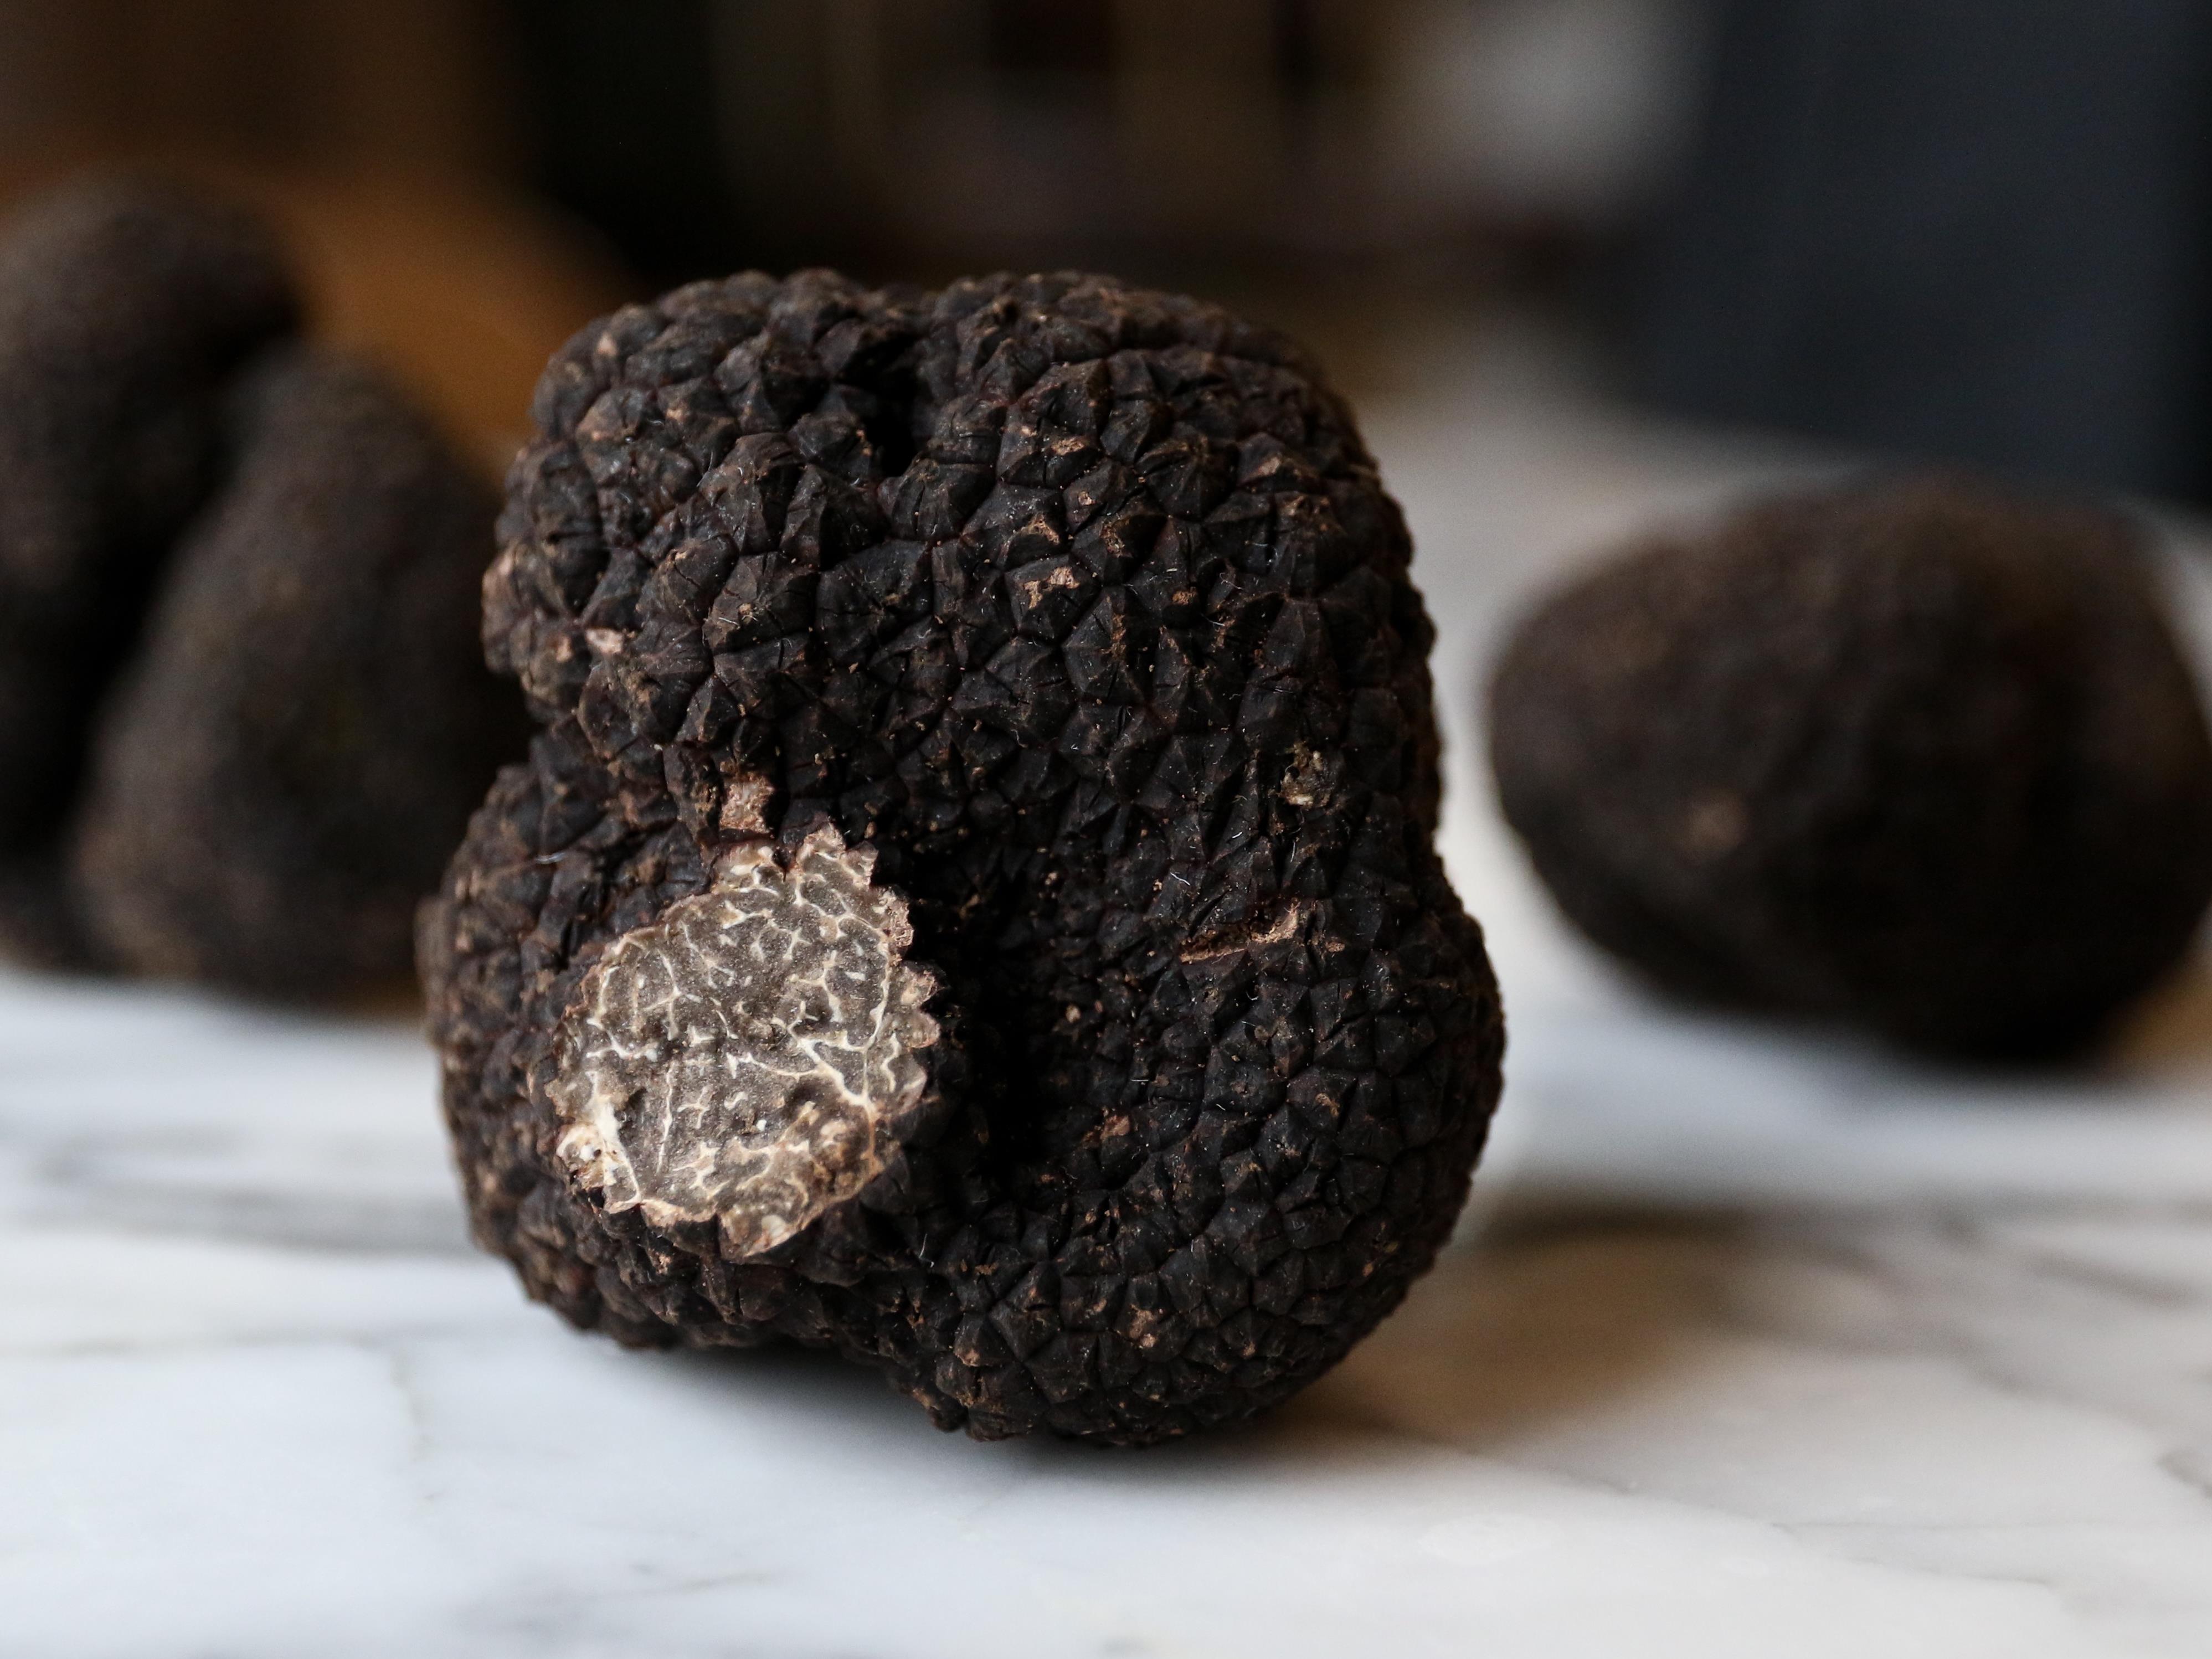 cvld-truffe-battuto-truffe-dombrie-truffe-noire-nourriture-alimentation.jpg